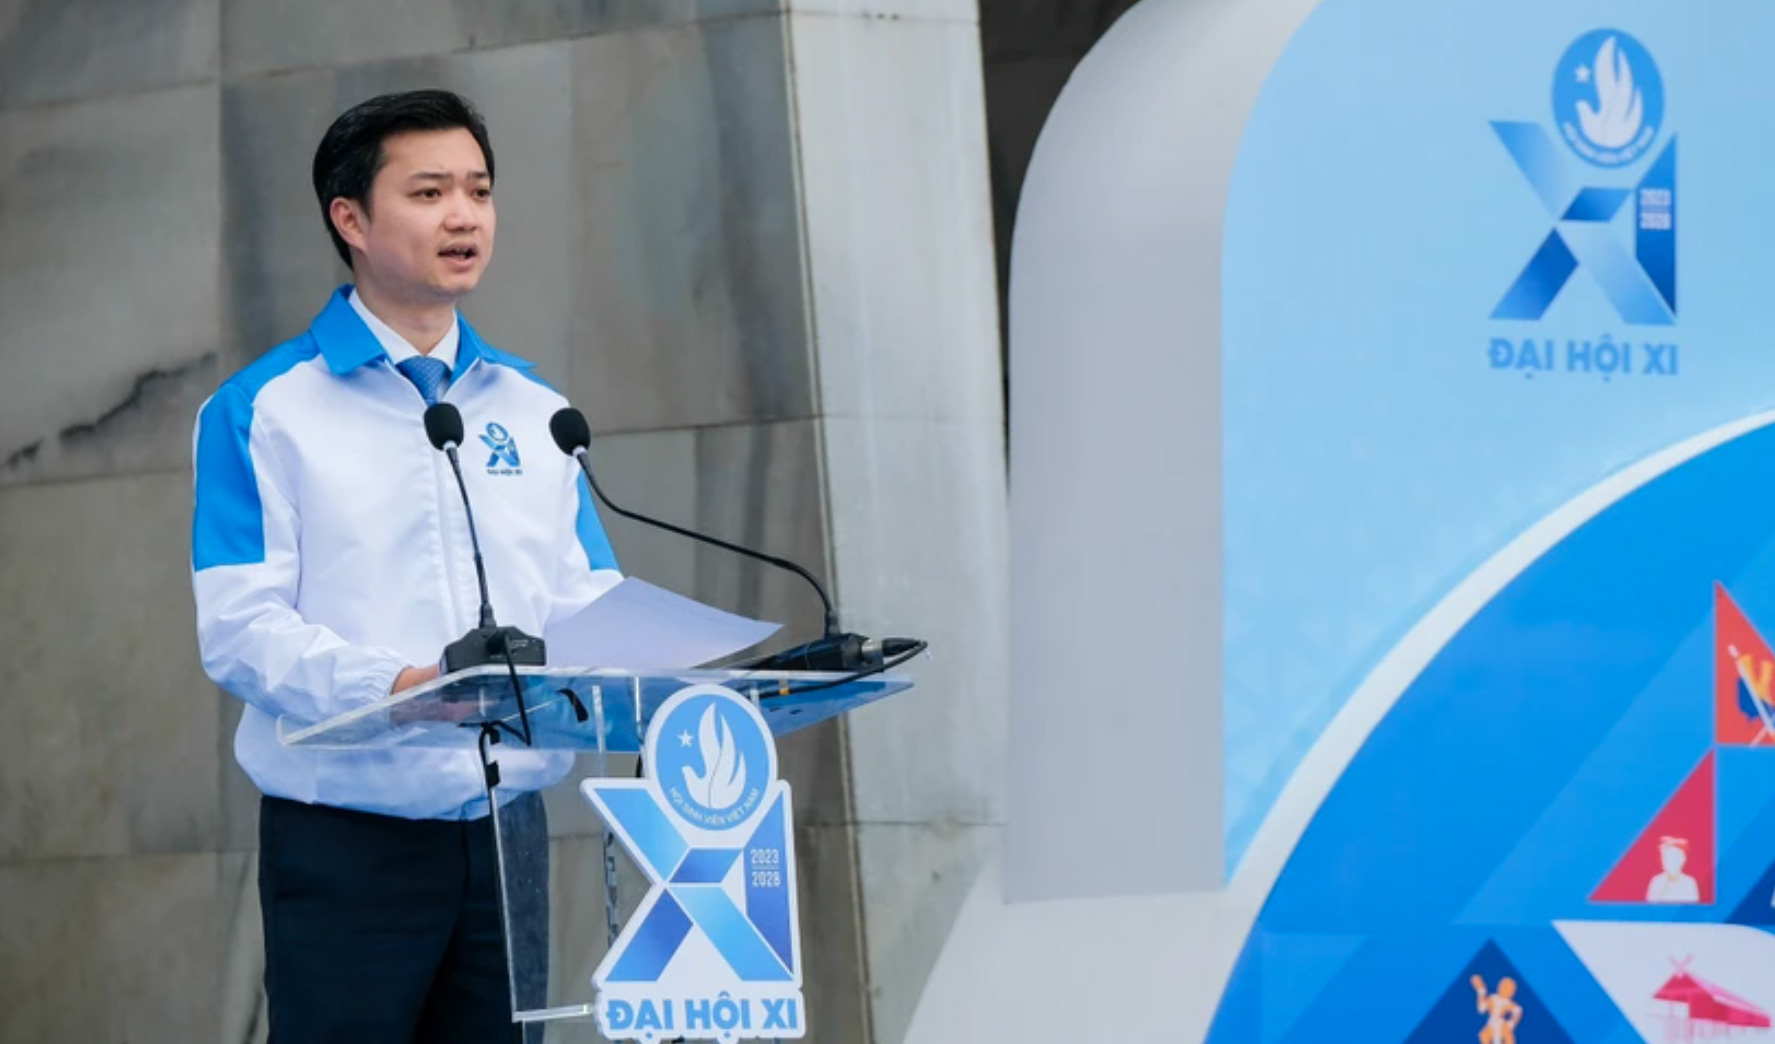 Chủ tịch Hội Sinh viên Việt Nam khóa X Nguyễn Minh Triết tiếp tục được bầu là Chủ tịch Hội Sinh viên Việt Nam khóa XI